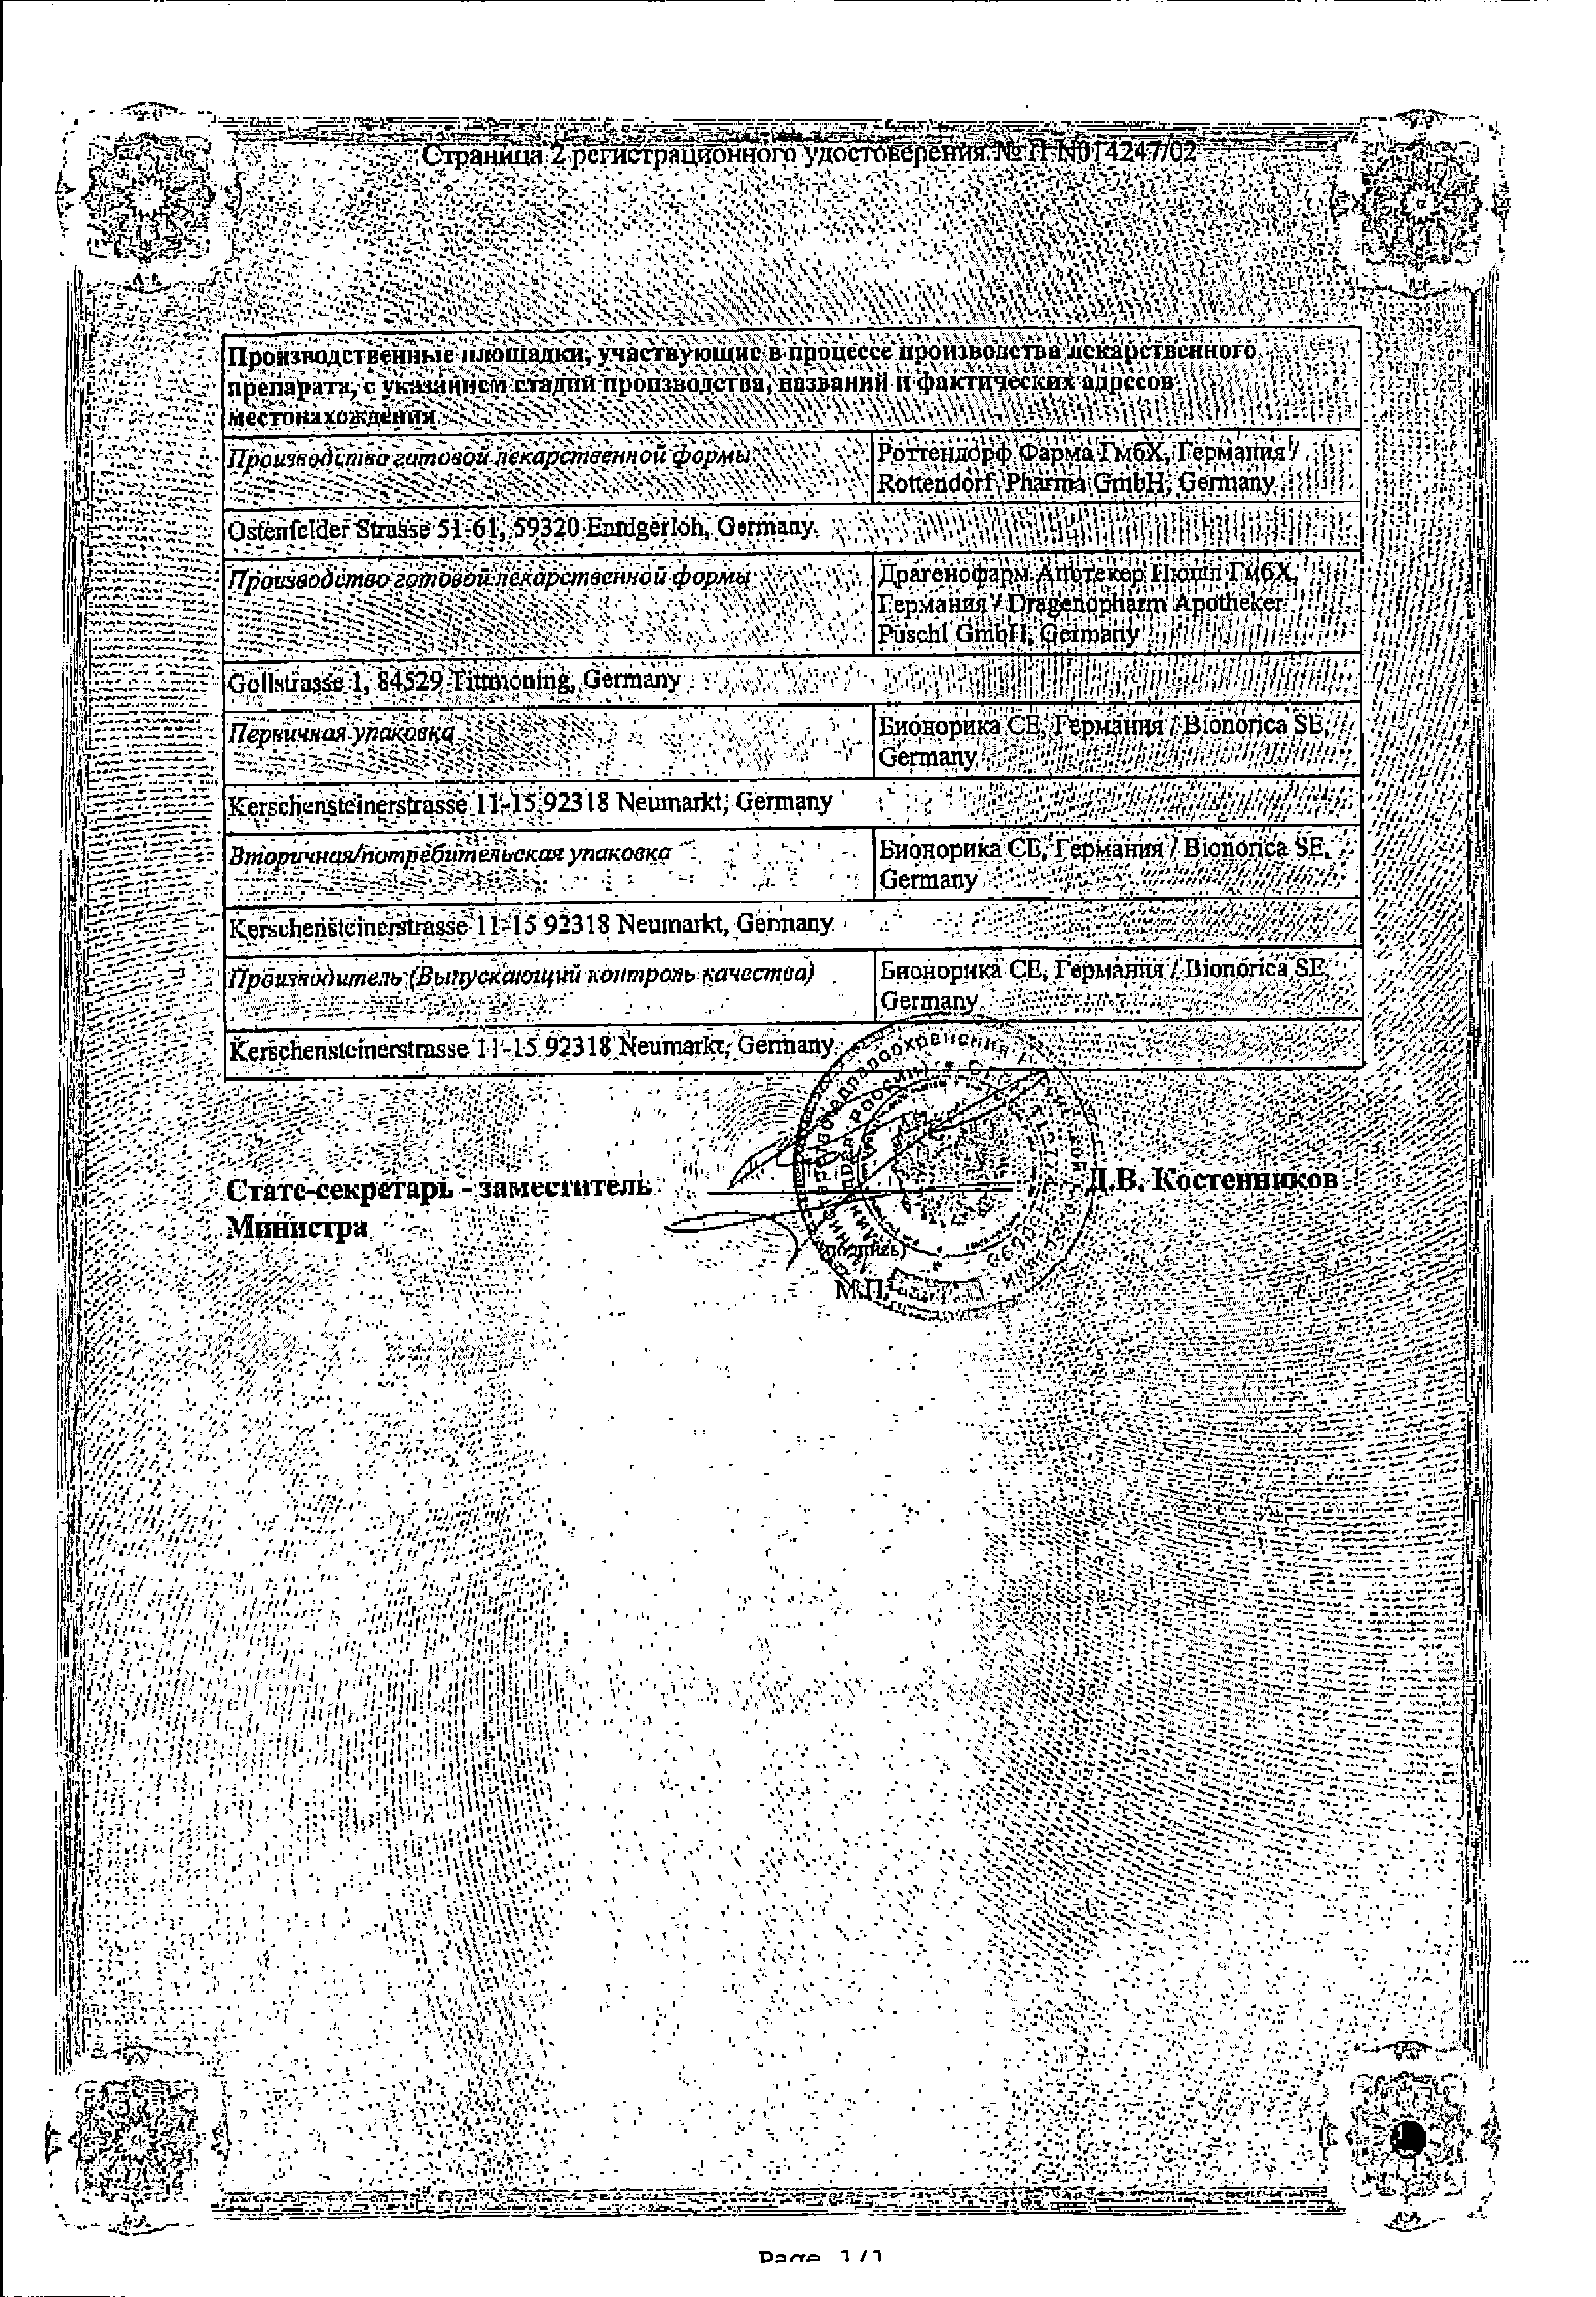 Синупрет сертификат